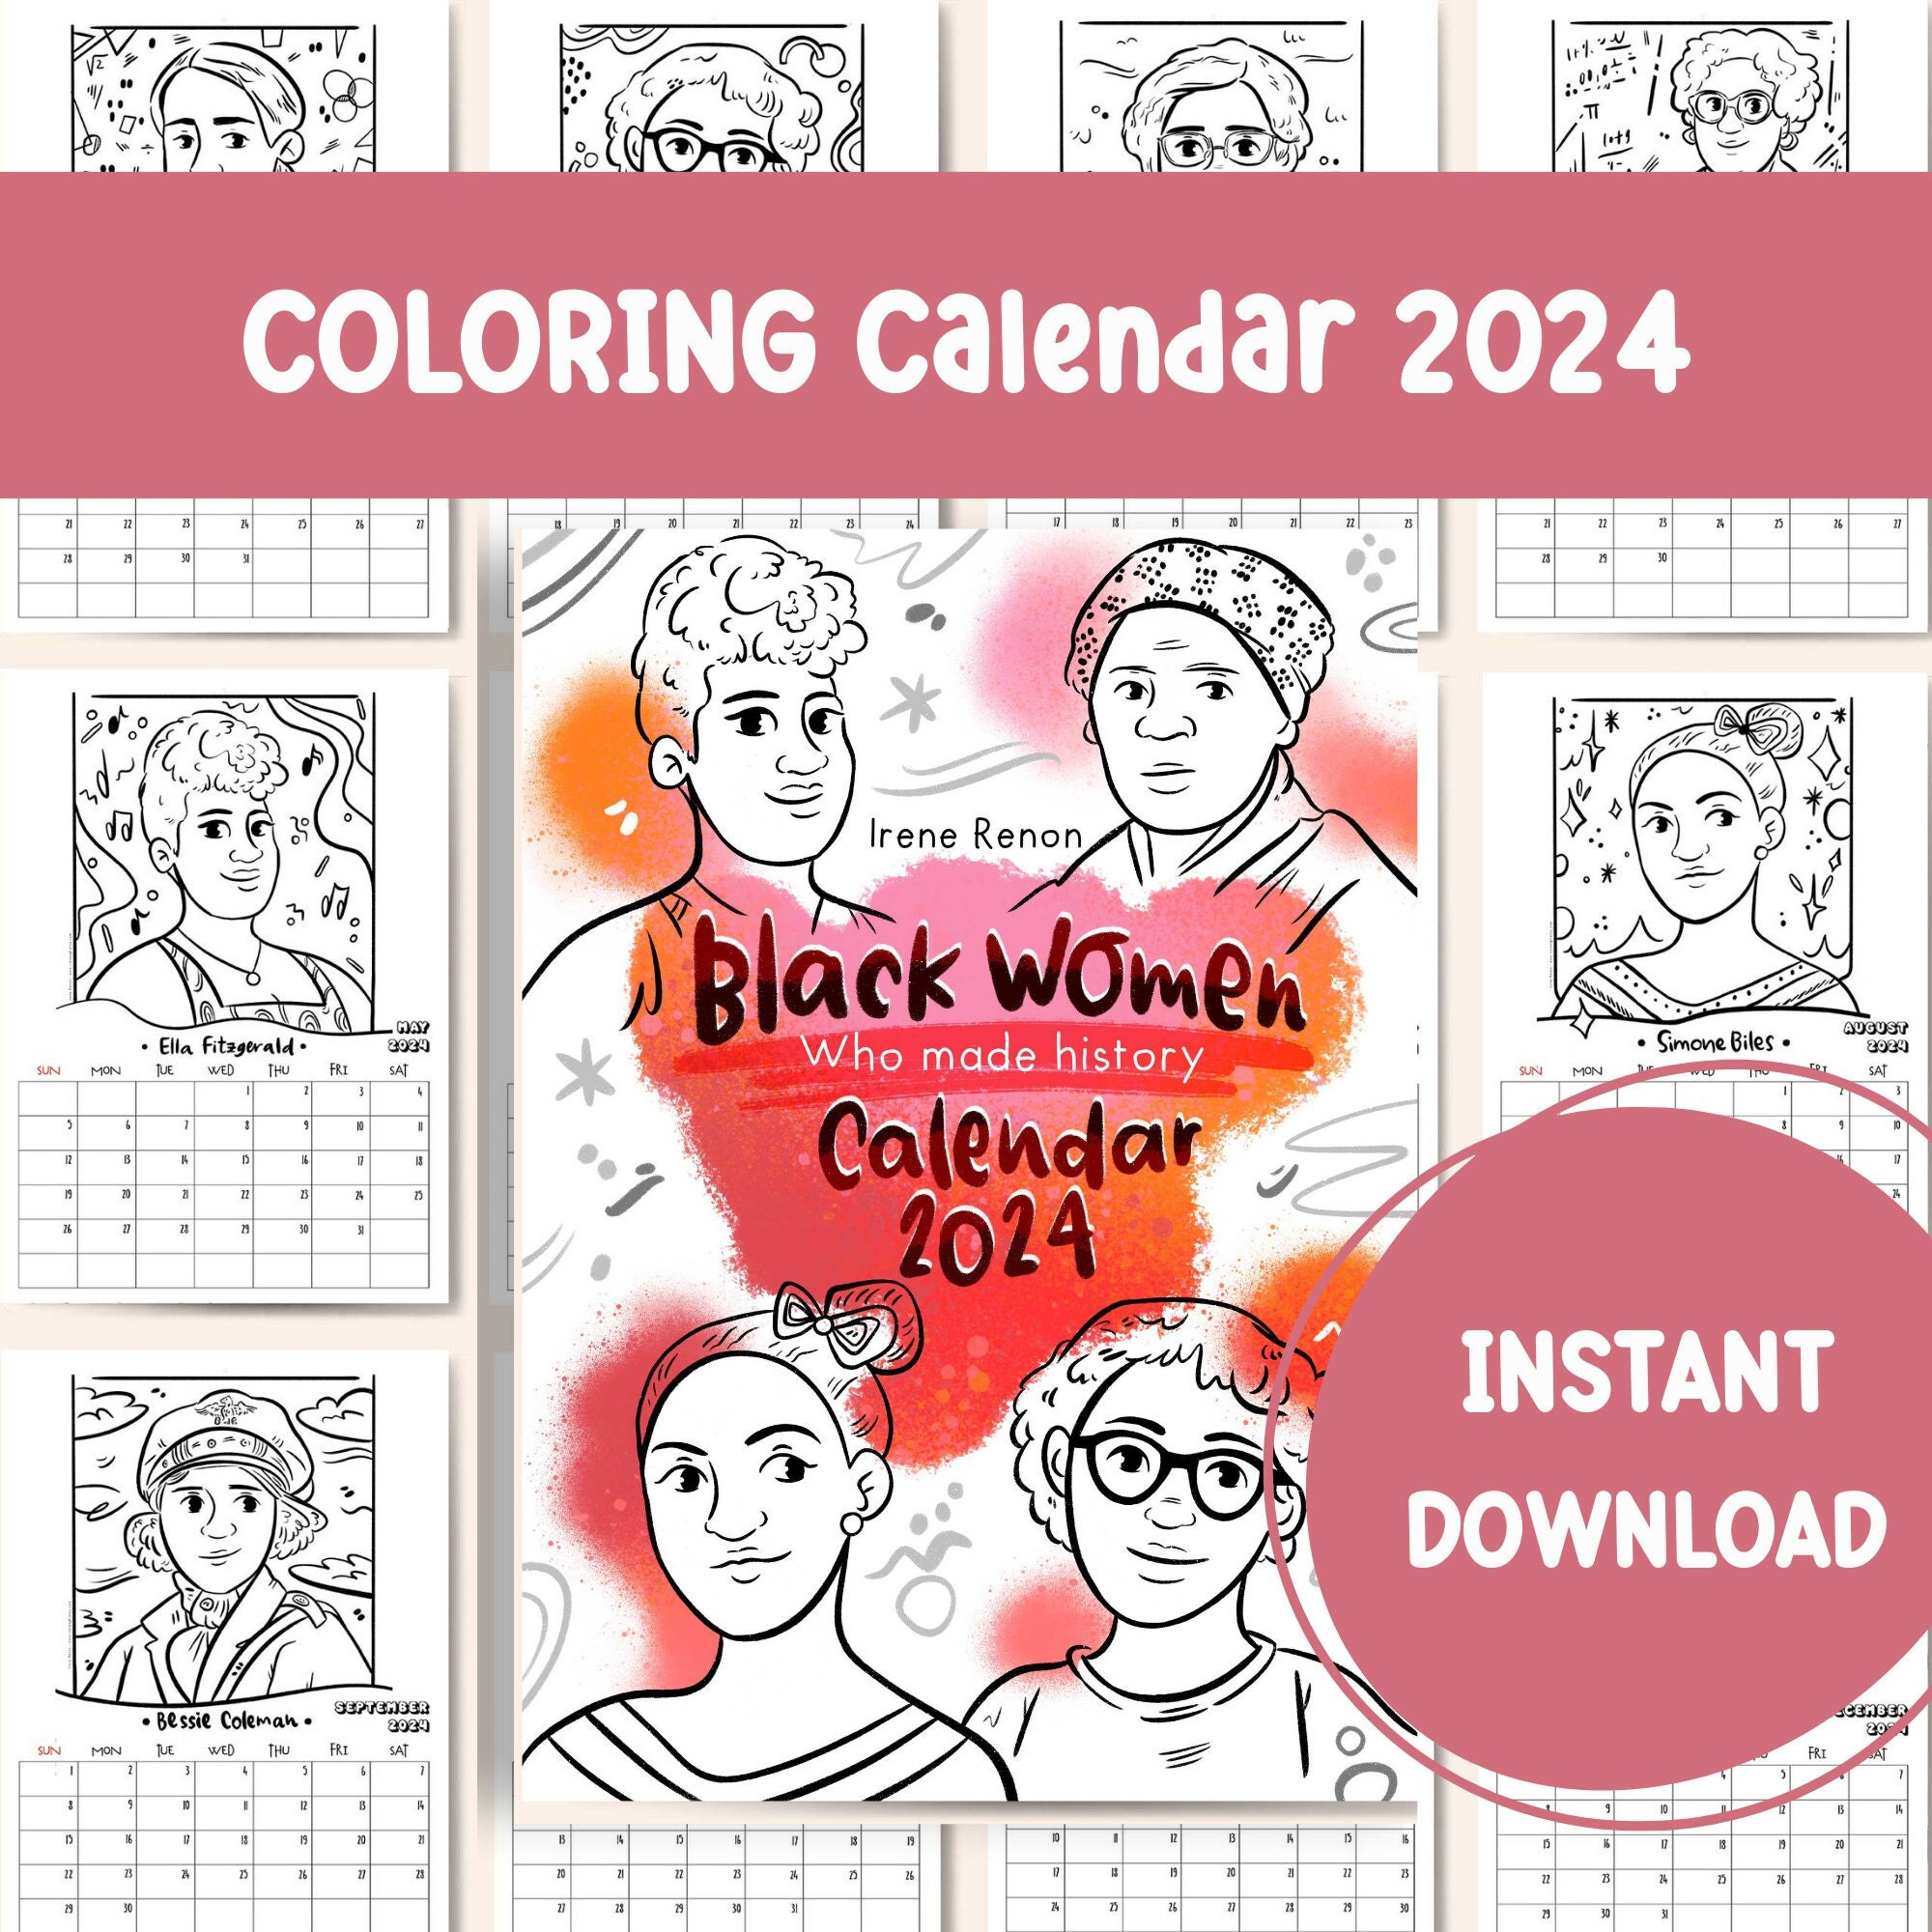 Coloring Calendar 2024 Printable Calendar Famous Black Women - Etsy for 2024 Coloring Calendar Printable